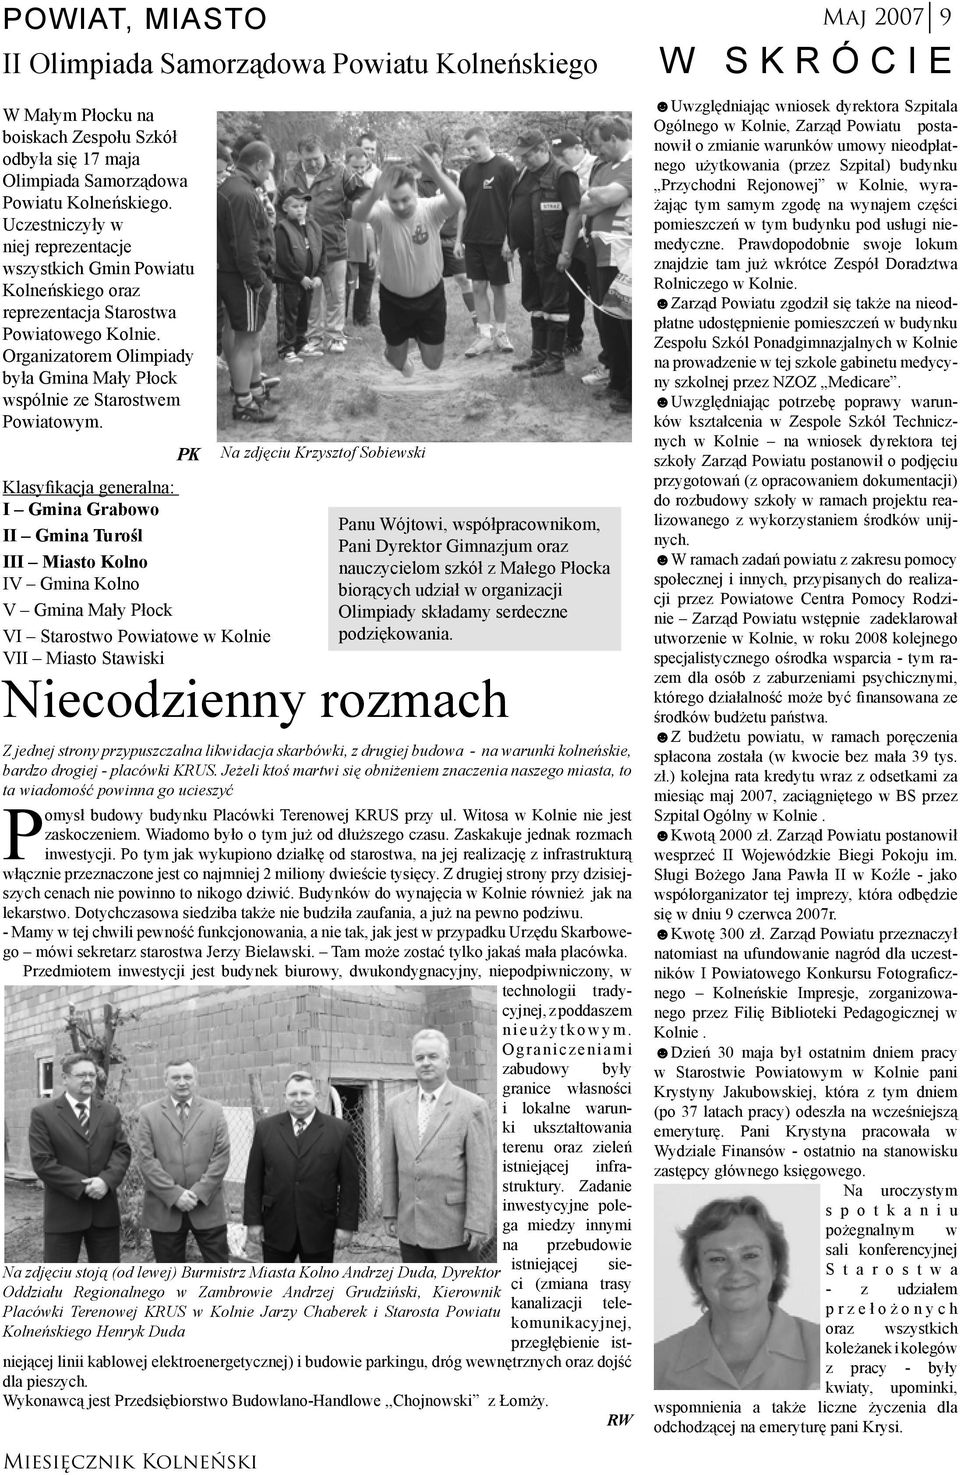 Organizatorem Olimpiady była Gmina Mały Płock wspólnie ze Starostwem Powiatowym.